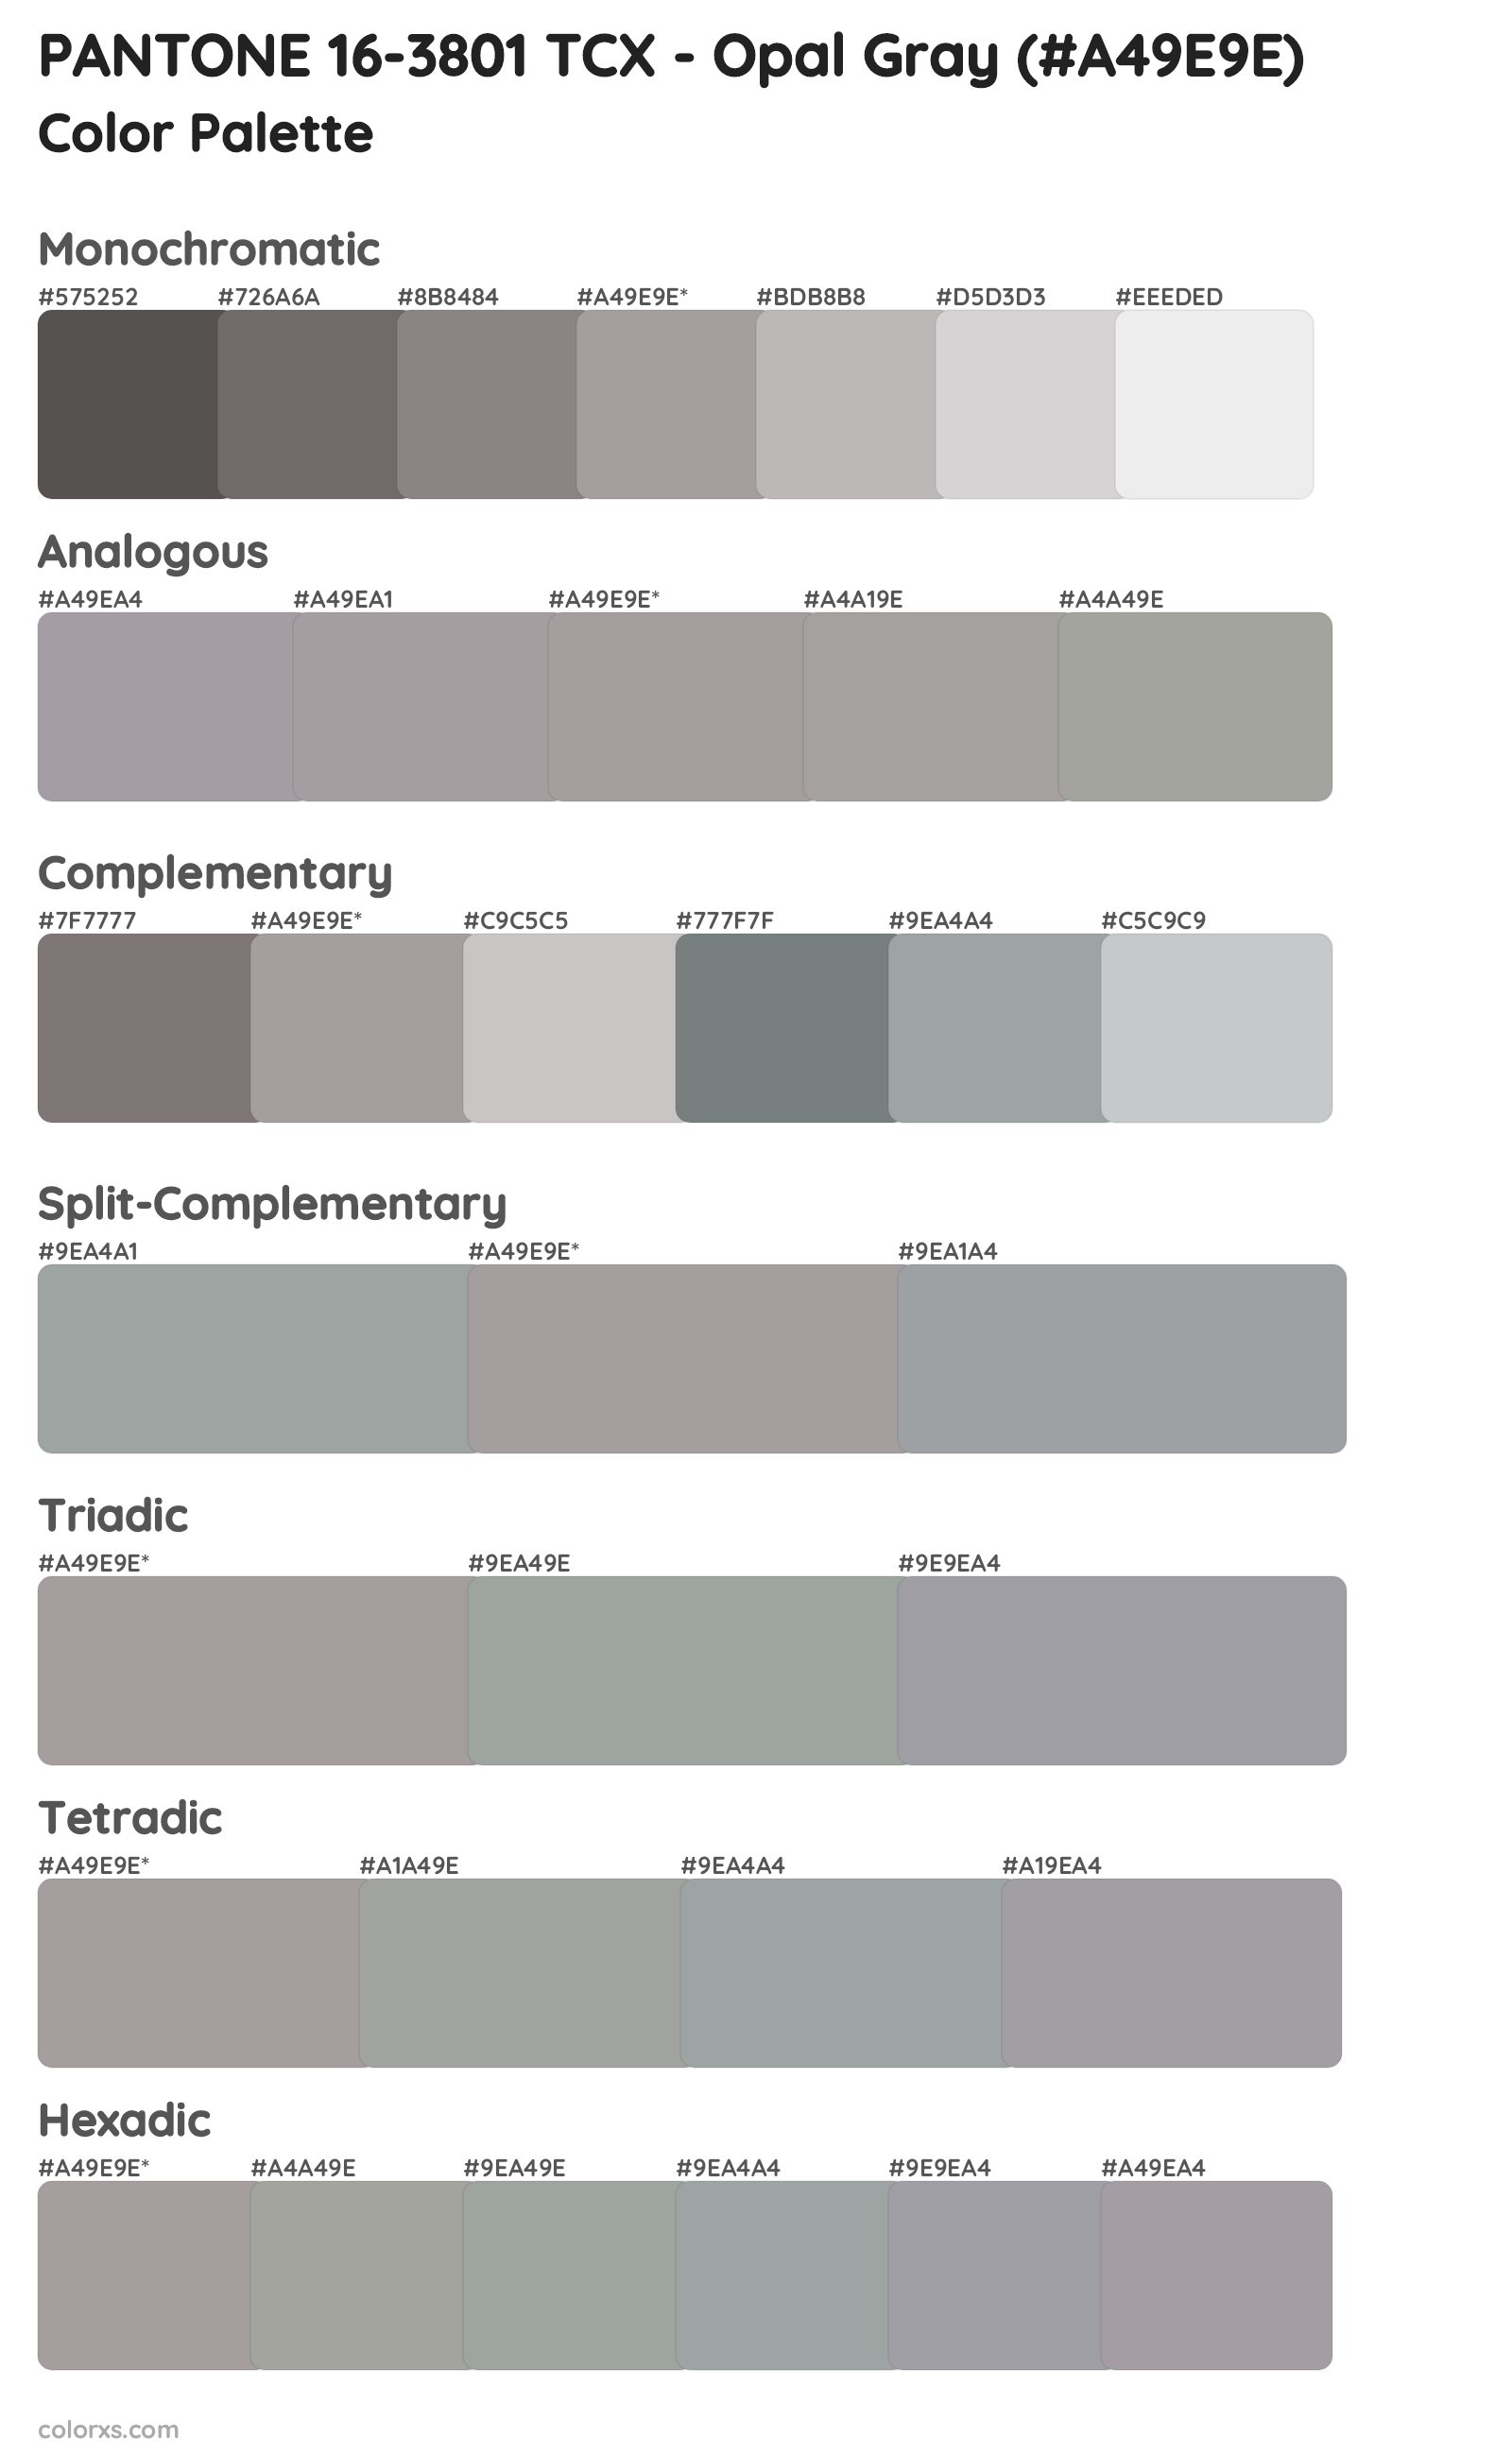 PANTONE 16-3801 TCX - Opal Gray Color Scheme Palettes